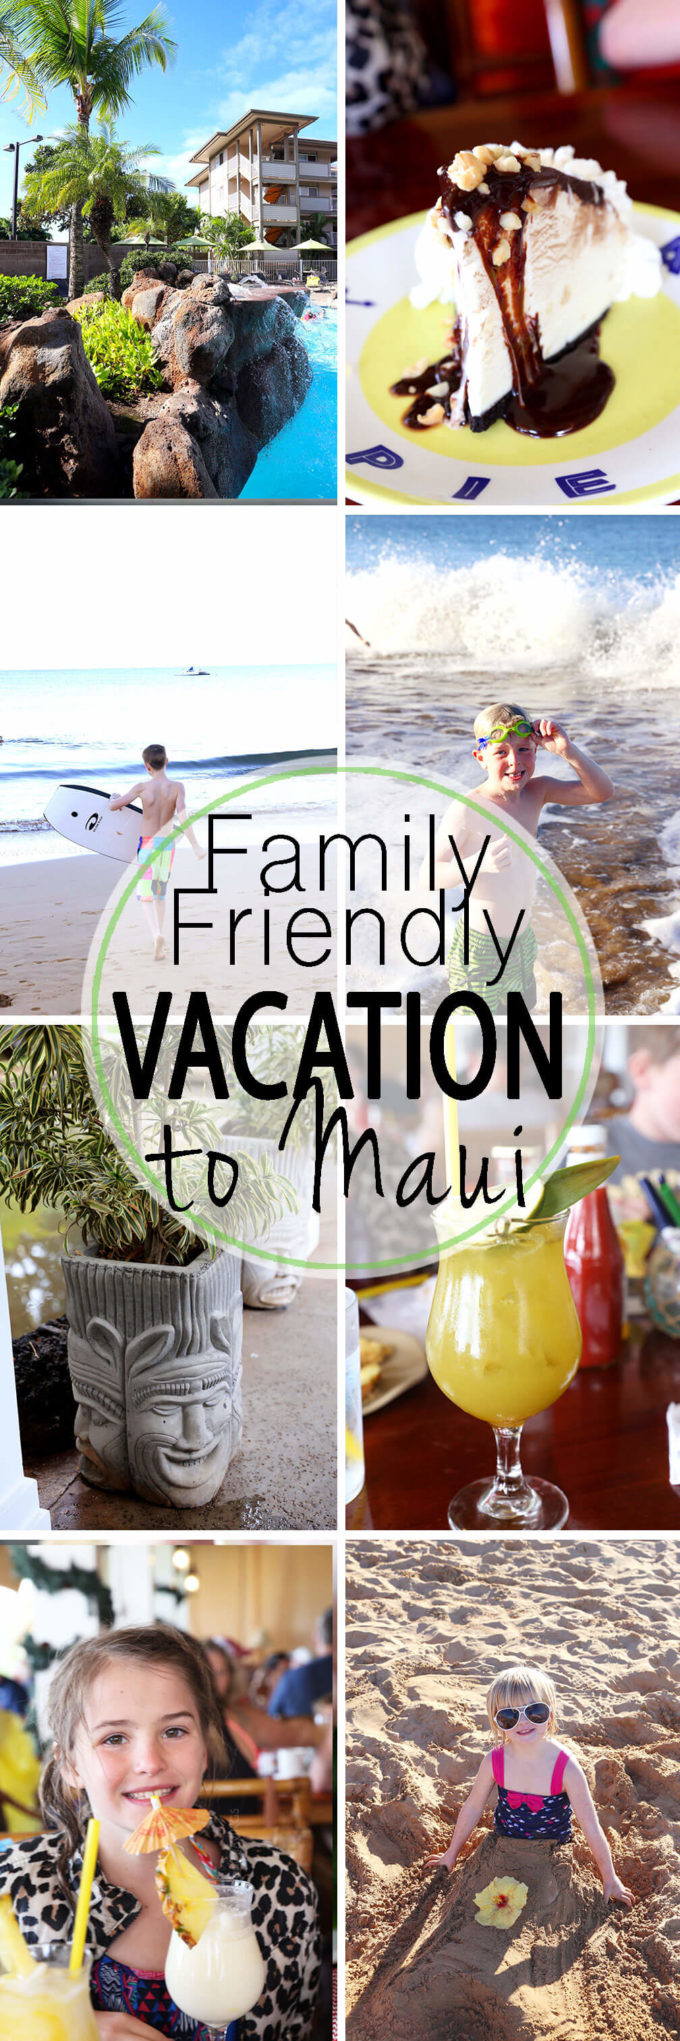 Family Friendly Vacation to Maui